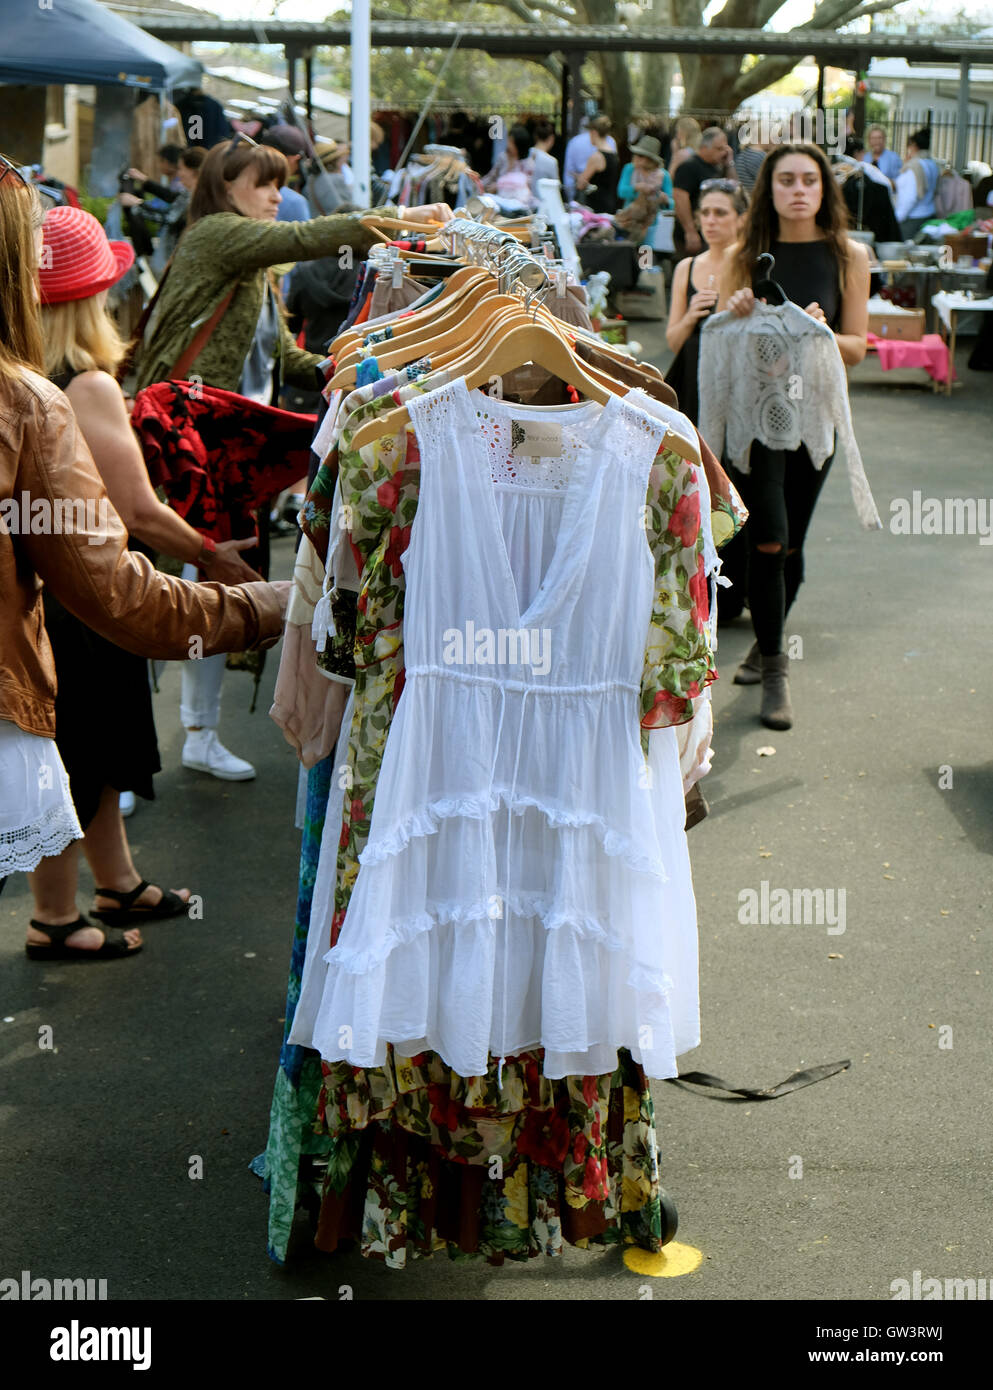 Las mujeres tienda para comprar ropa en un mercado al aire libre Foto de stock